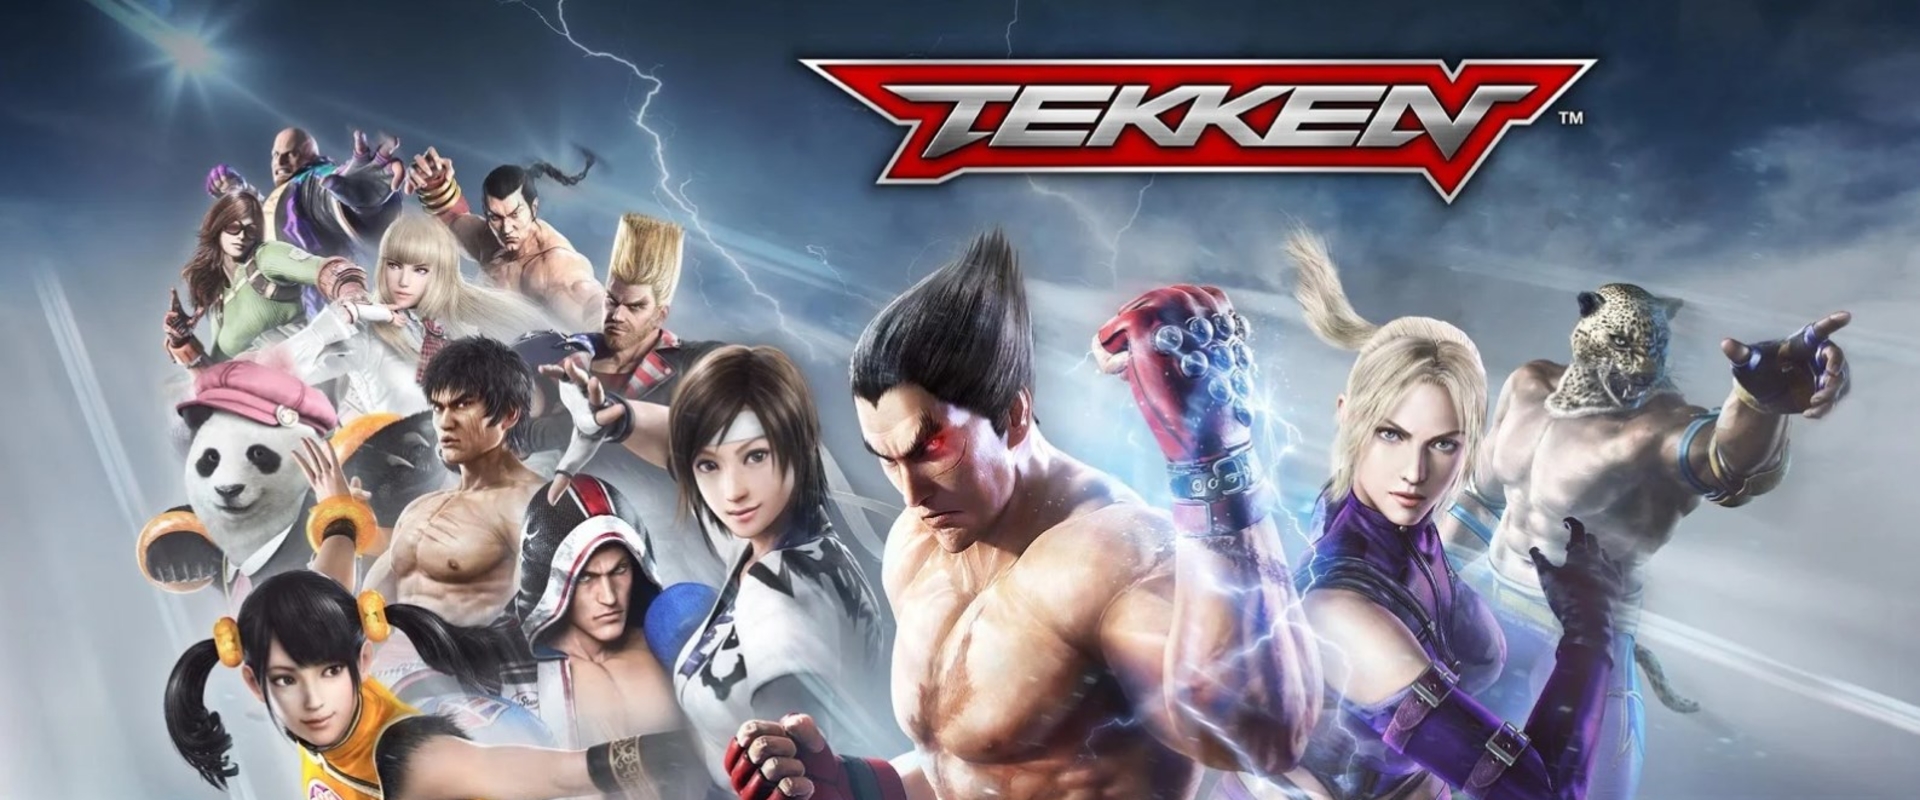 Már elérhető a Tekken mobilverziója, indulhat a bunyó!